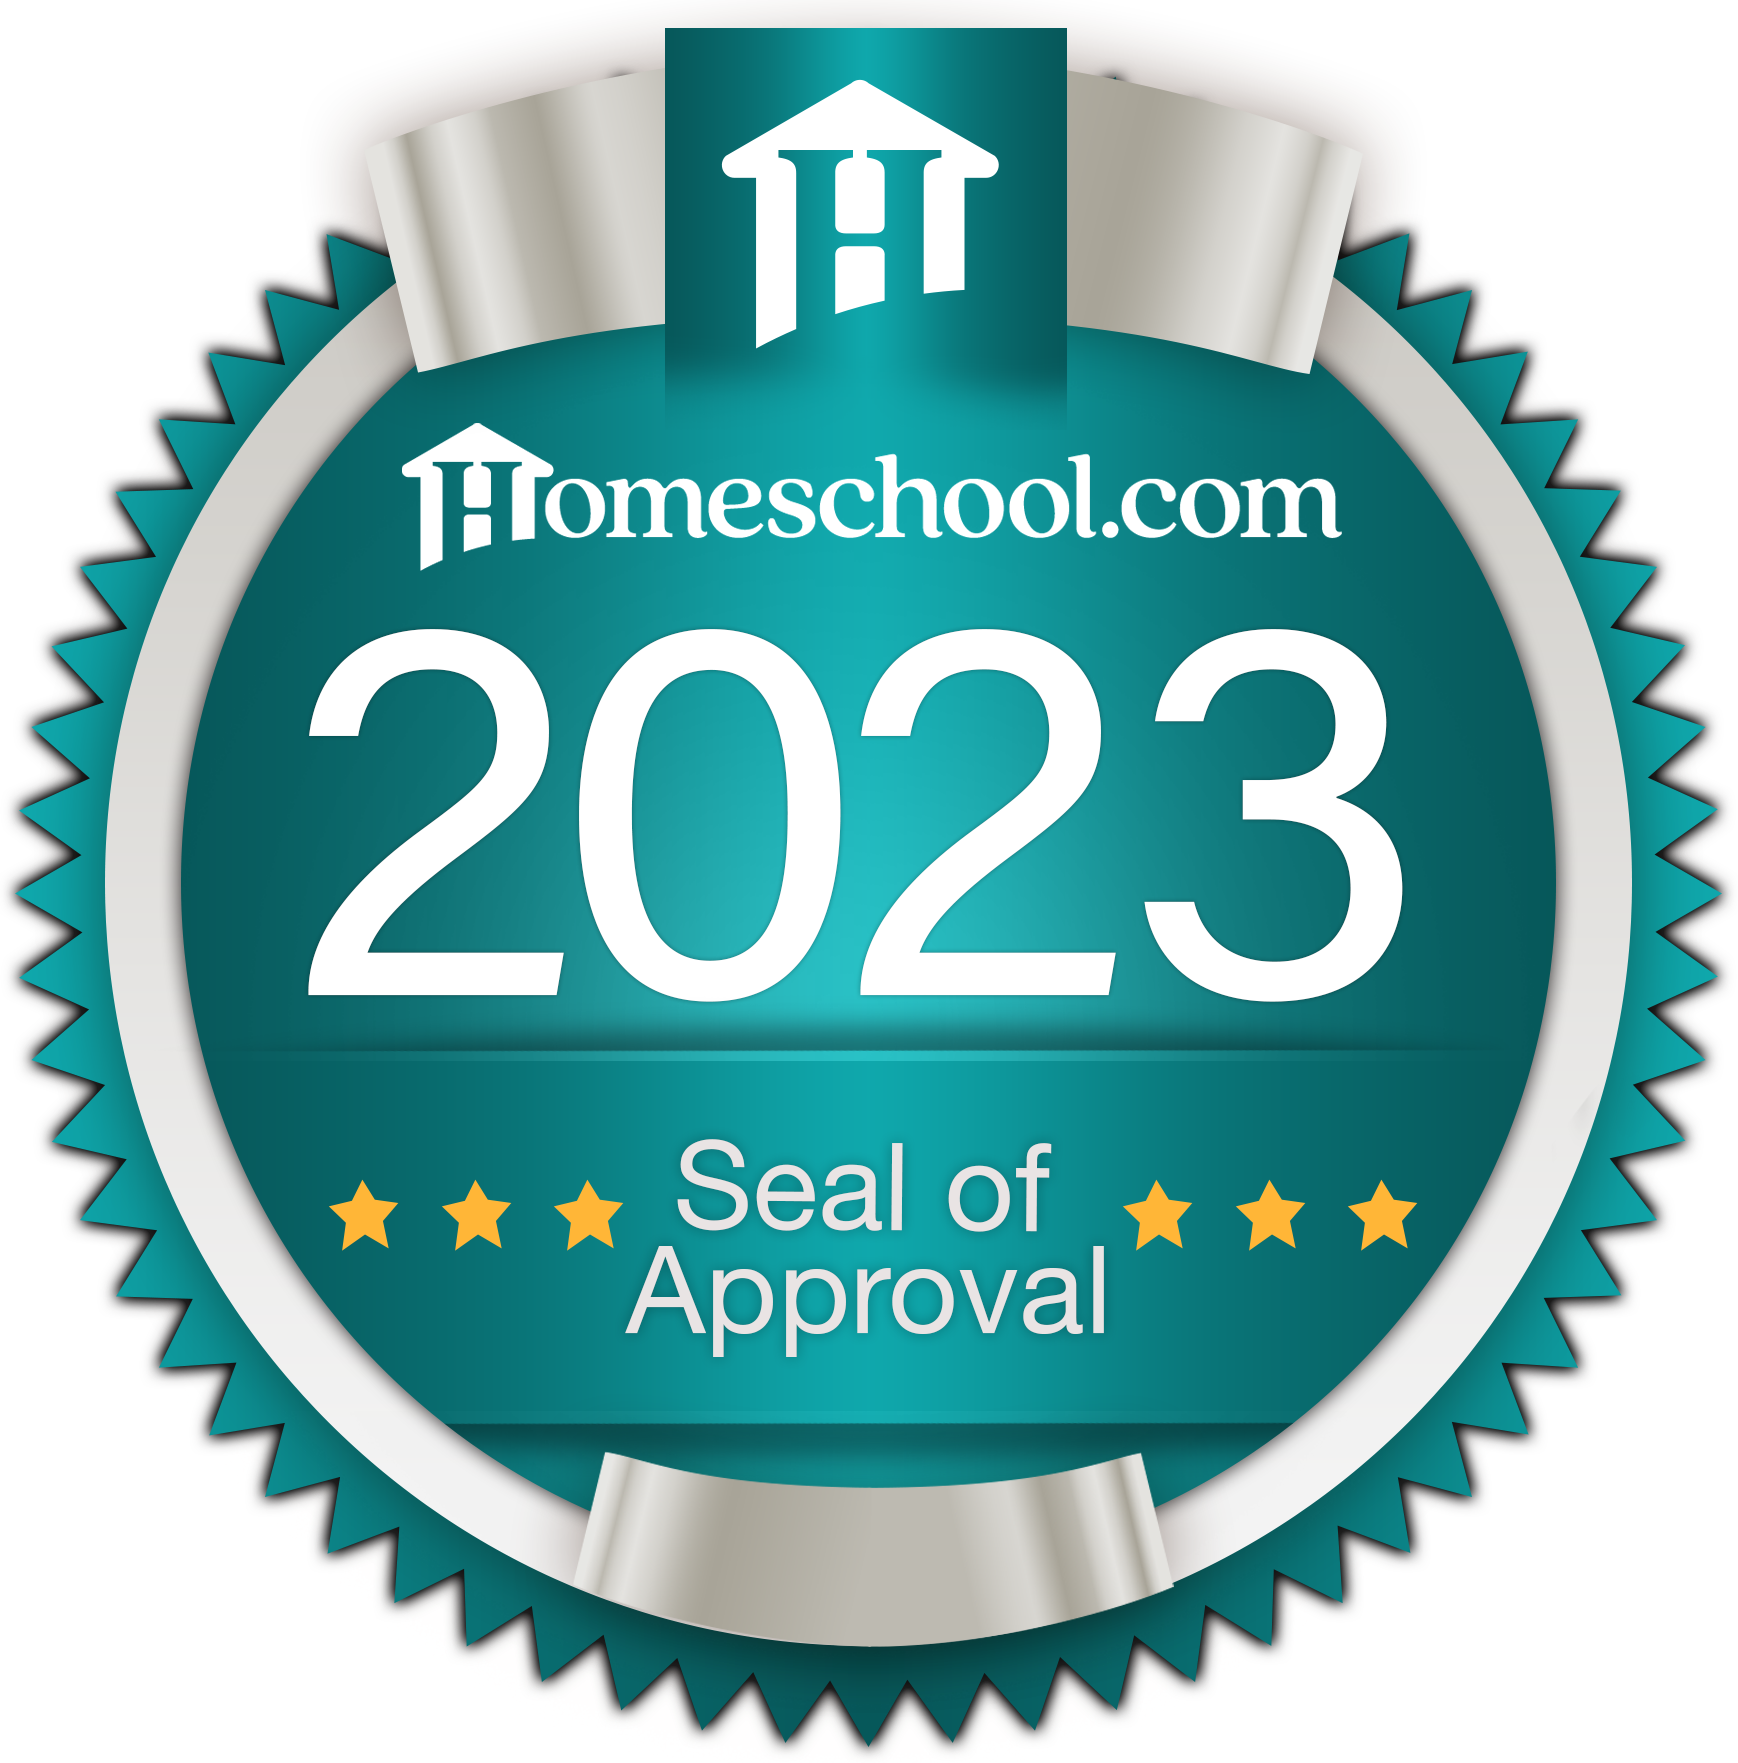 2023 Homeschool.com Award